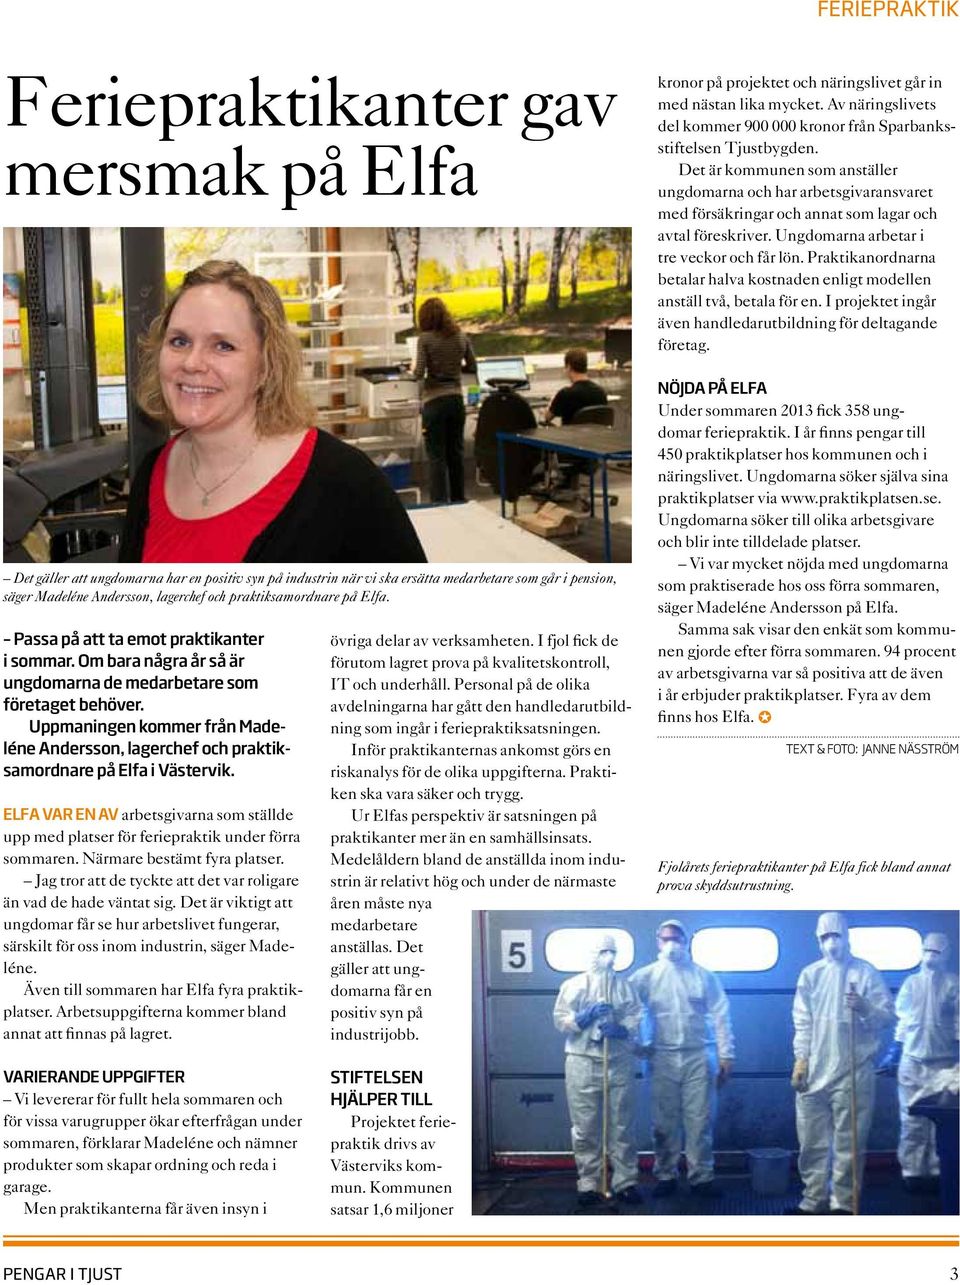 Uppmaningen kommer från Madeléne Andersson, lagerchef och praktiksamordnare på Elfa i Västervik. Elfa var en av arbetsgivarna som ställde upp med platser för feriepraktik under förra sommaren.